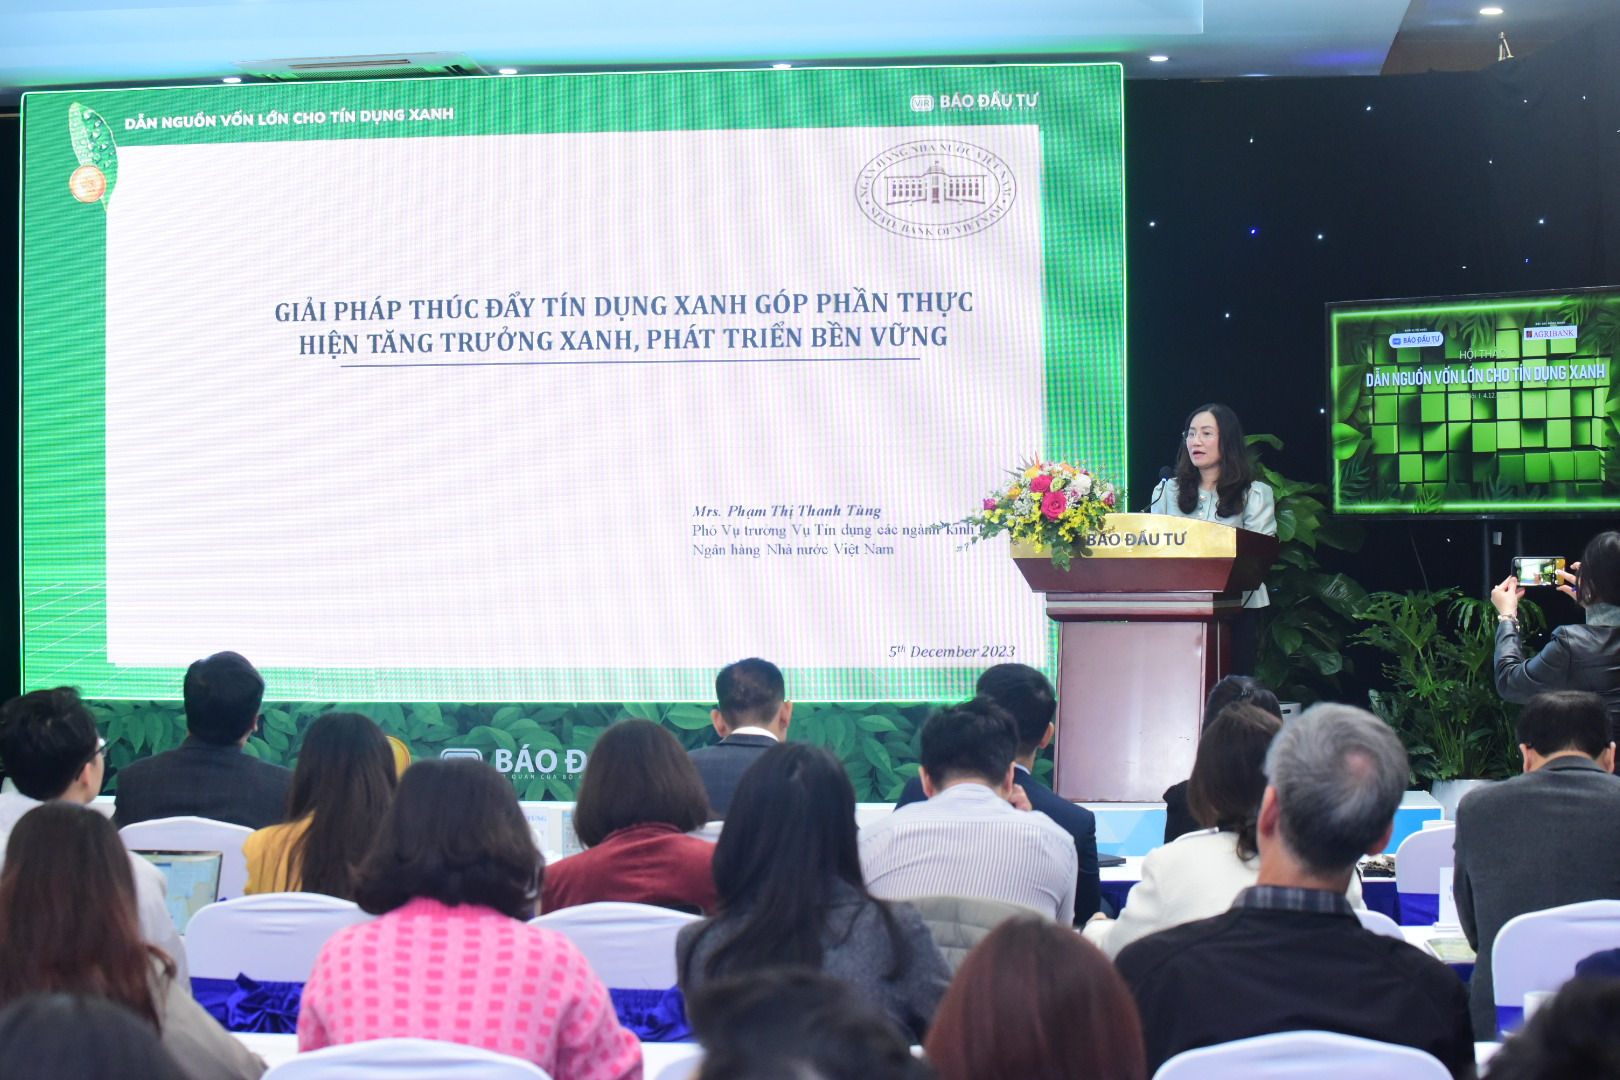 Bà Phạm Thị Thanh Tùng, Phó Vụ trưởng, Vụ Tín dụng các ngành kinh tế chia sẻ giải pháp thúc đẩy tín dụng xanh.